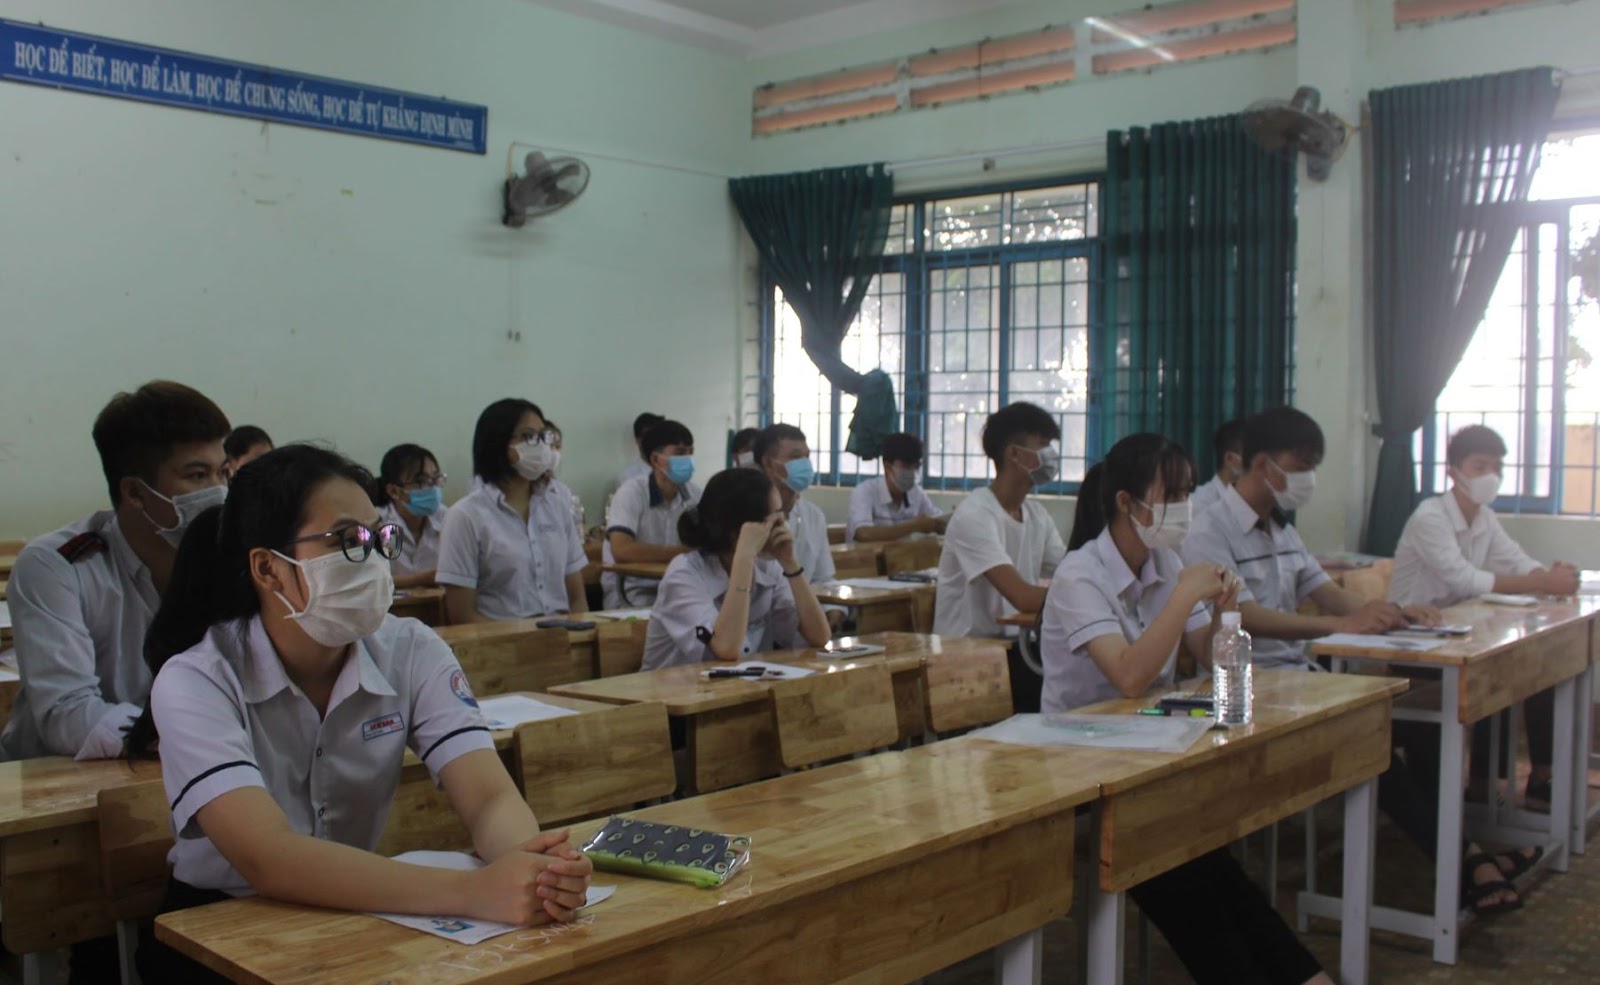 Đánh Giá Trường THPT Nguyễn Văn Cừ Tỉnh Đắk Lắk Có Tốt Không